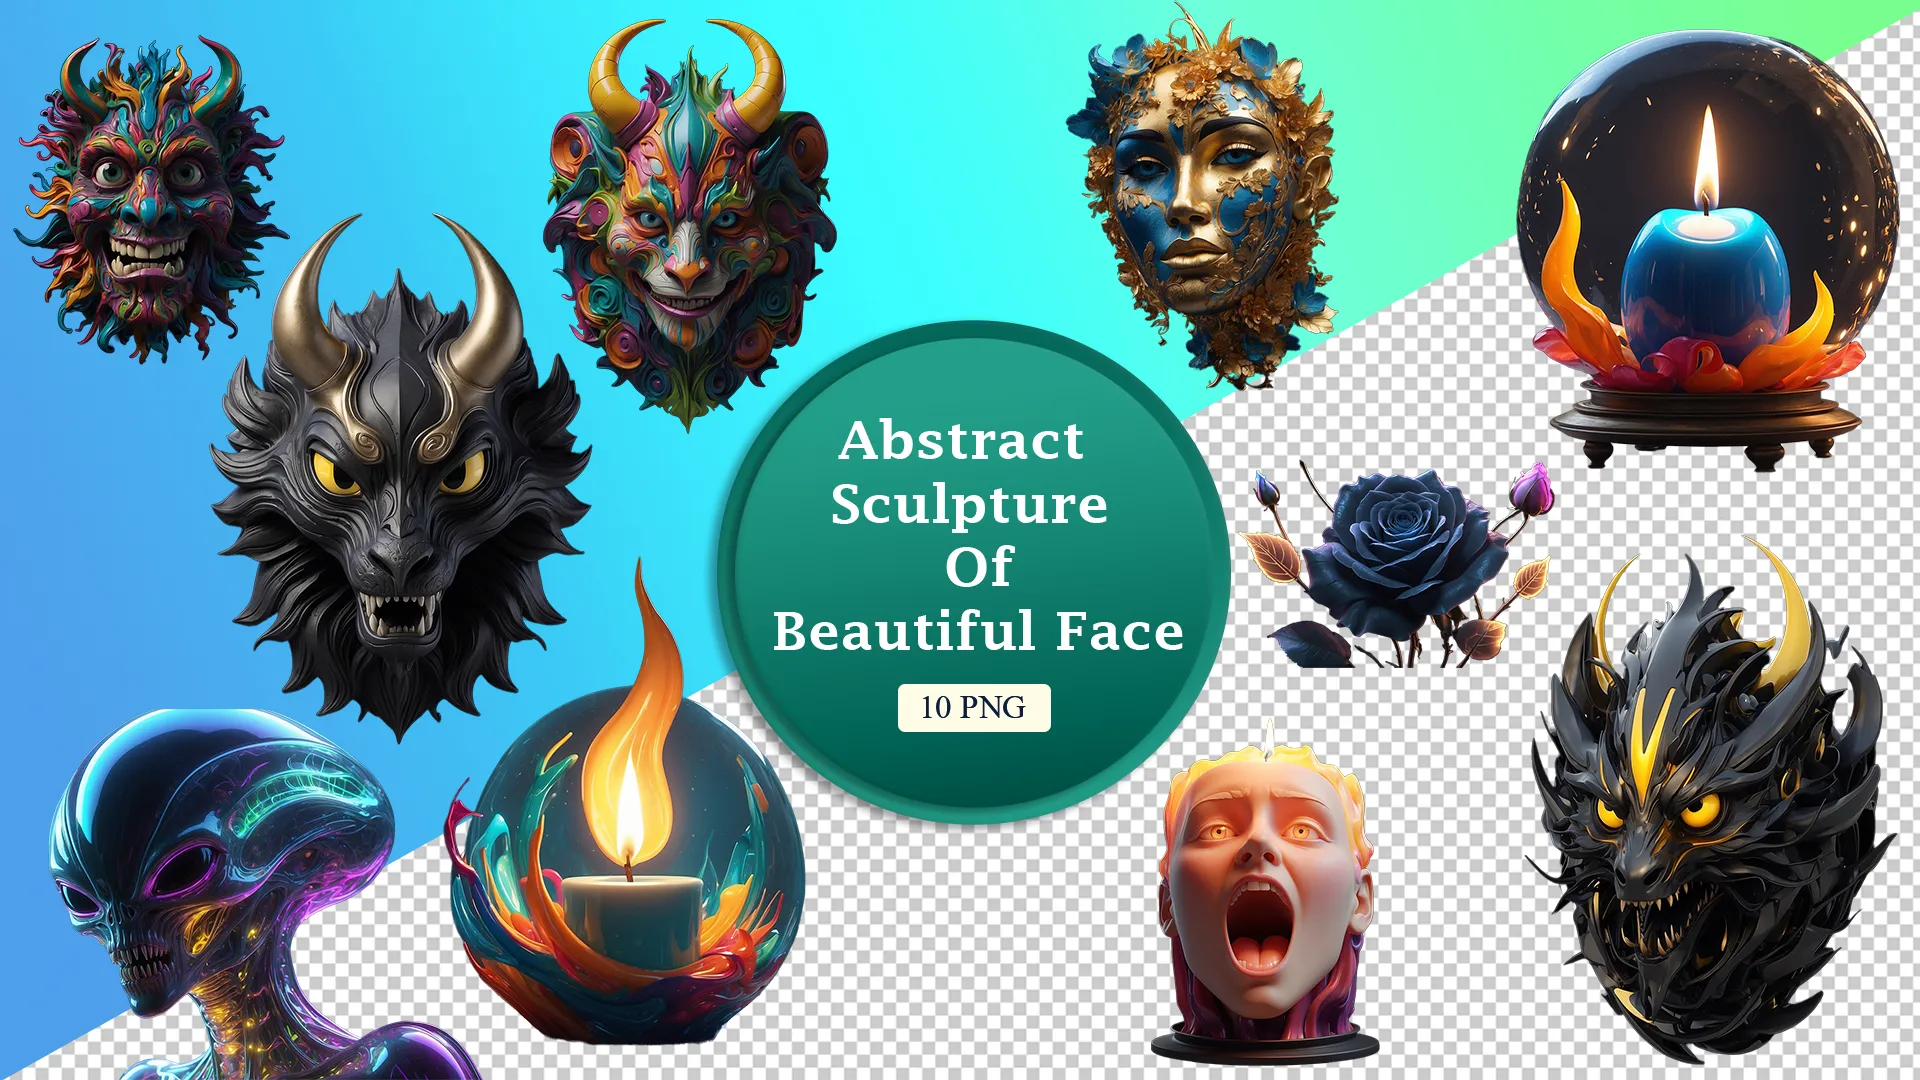 Unique Faces and Fire 3D image